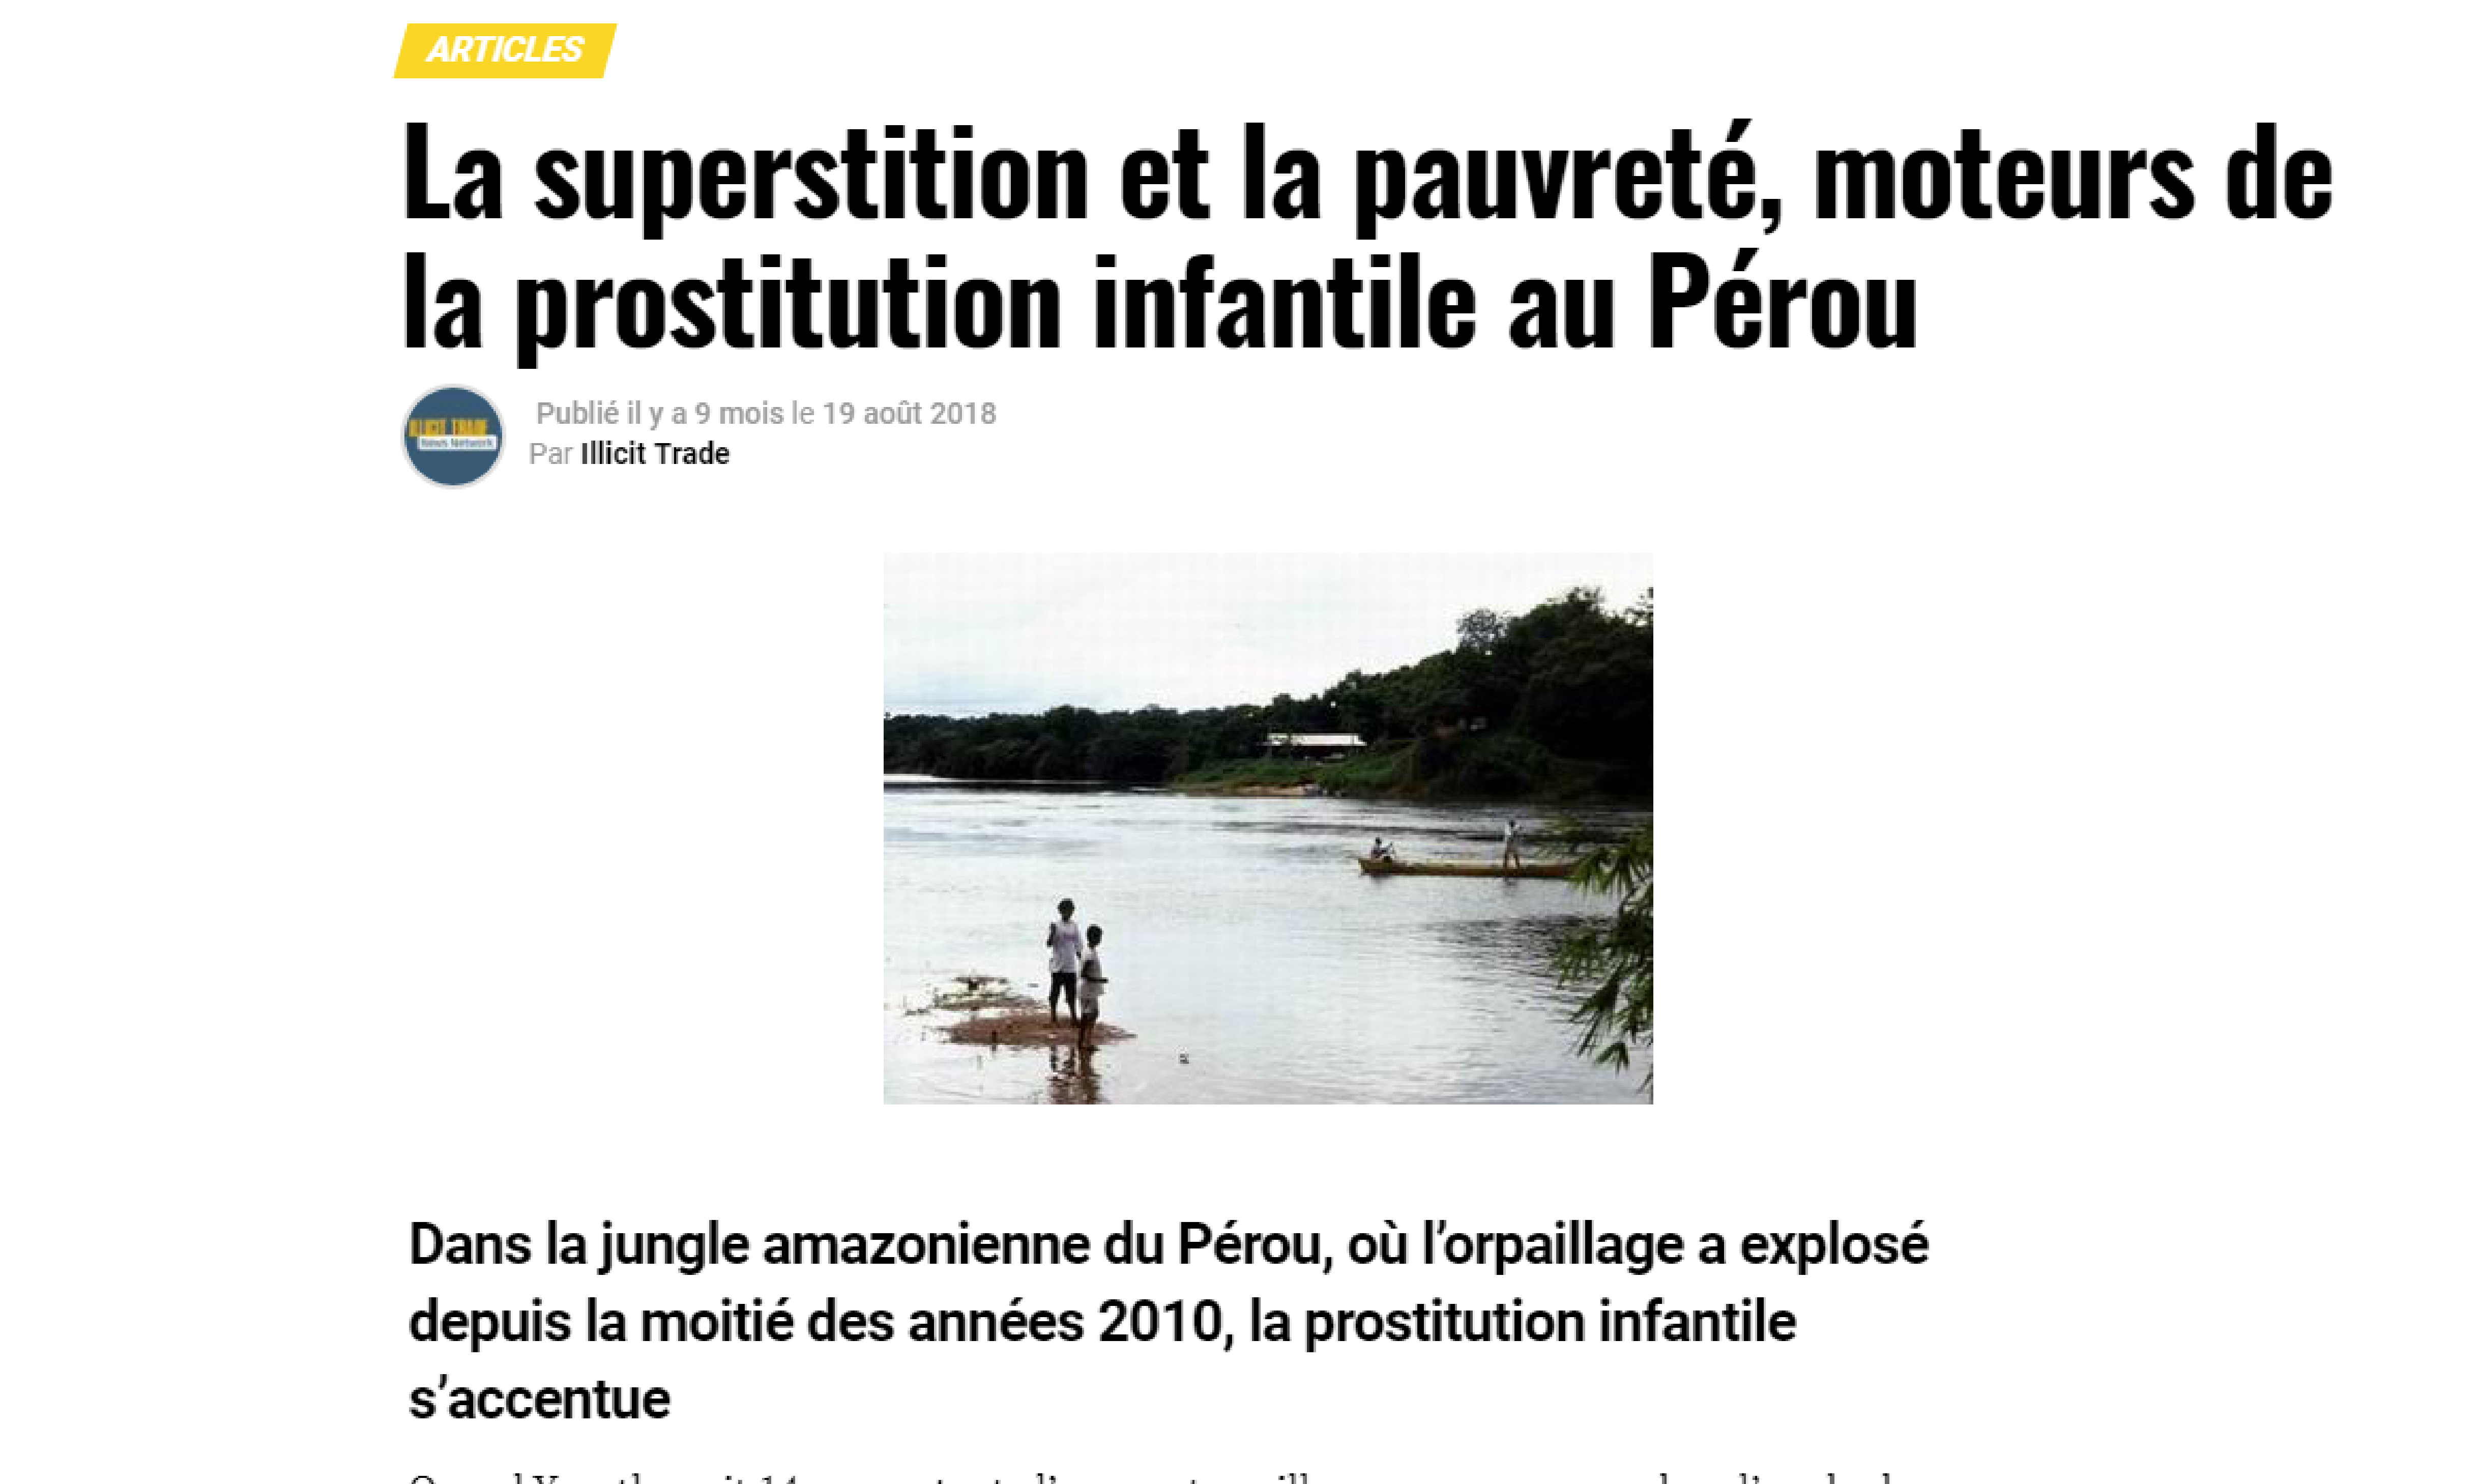 La superstition et la pauvreté, moteurs de la prostitution infantile au Pérou